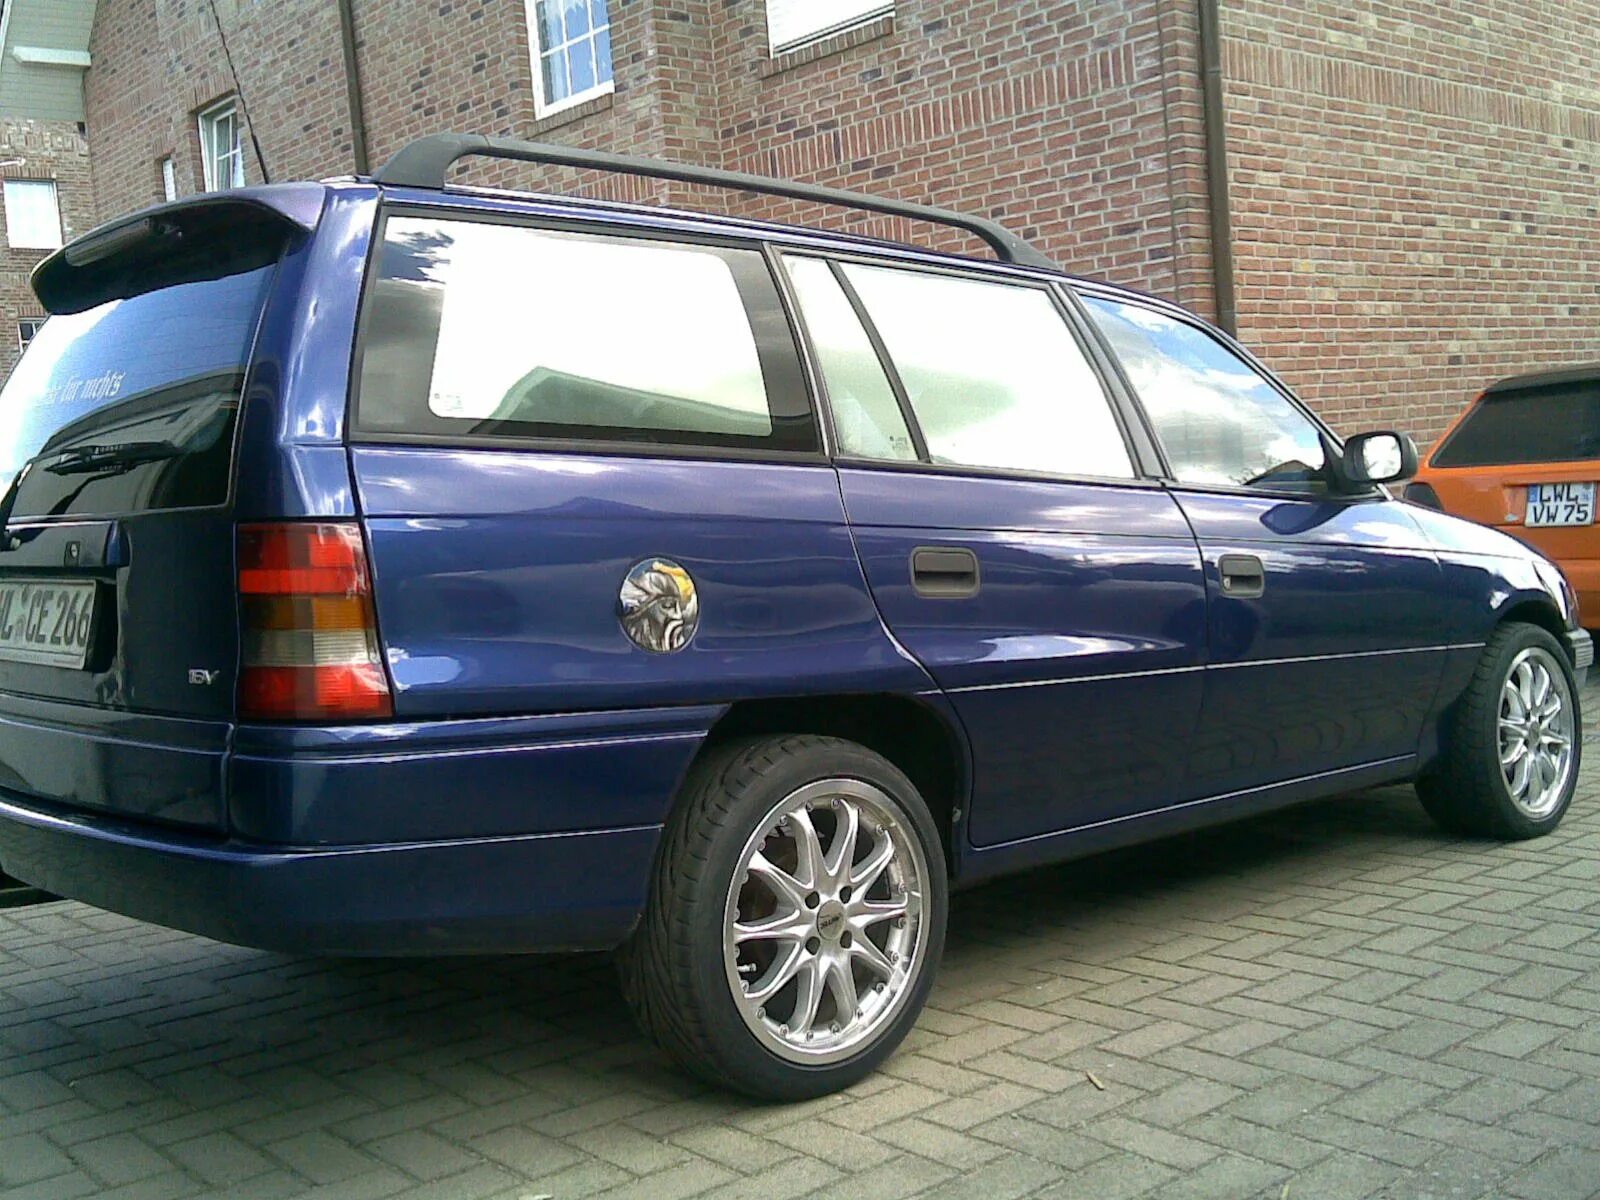 Универсал караван. Opel Astra Caravan универсал 1997. Opel Astra f 1997 универсал.